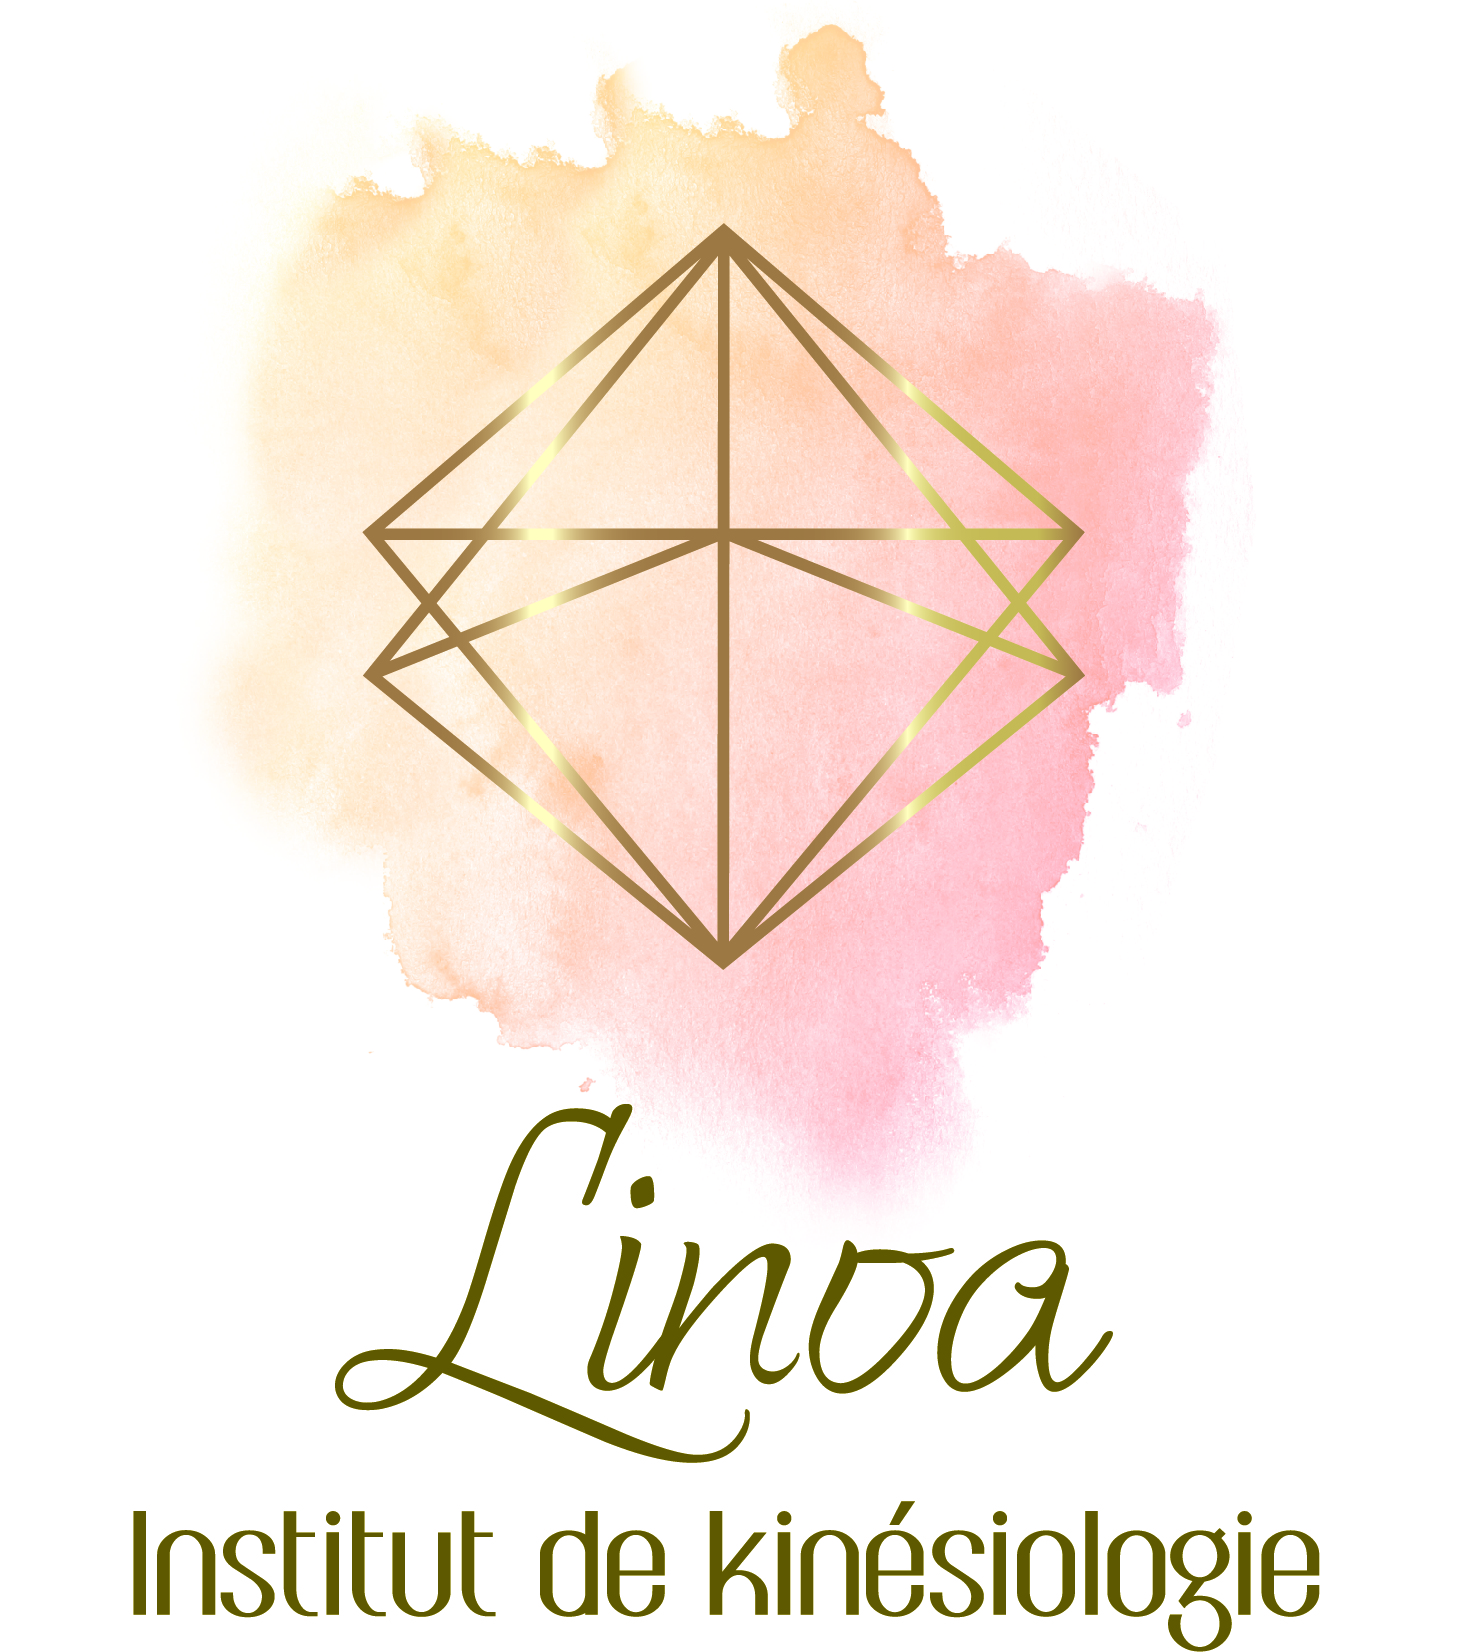 Institut de kinésiologie Linoa